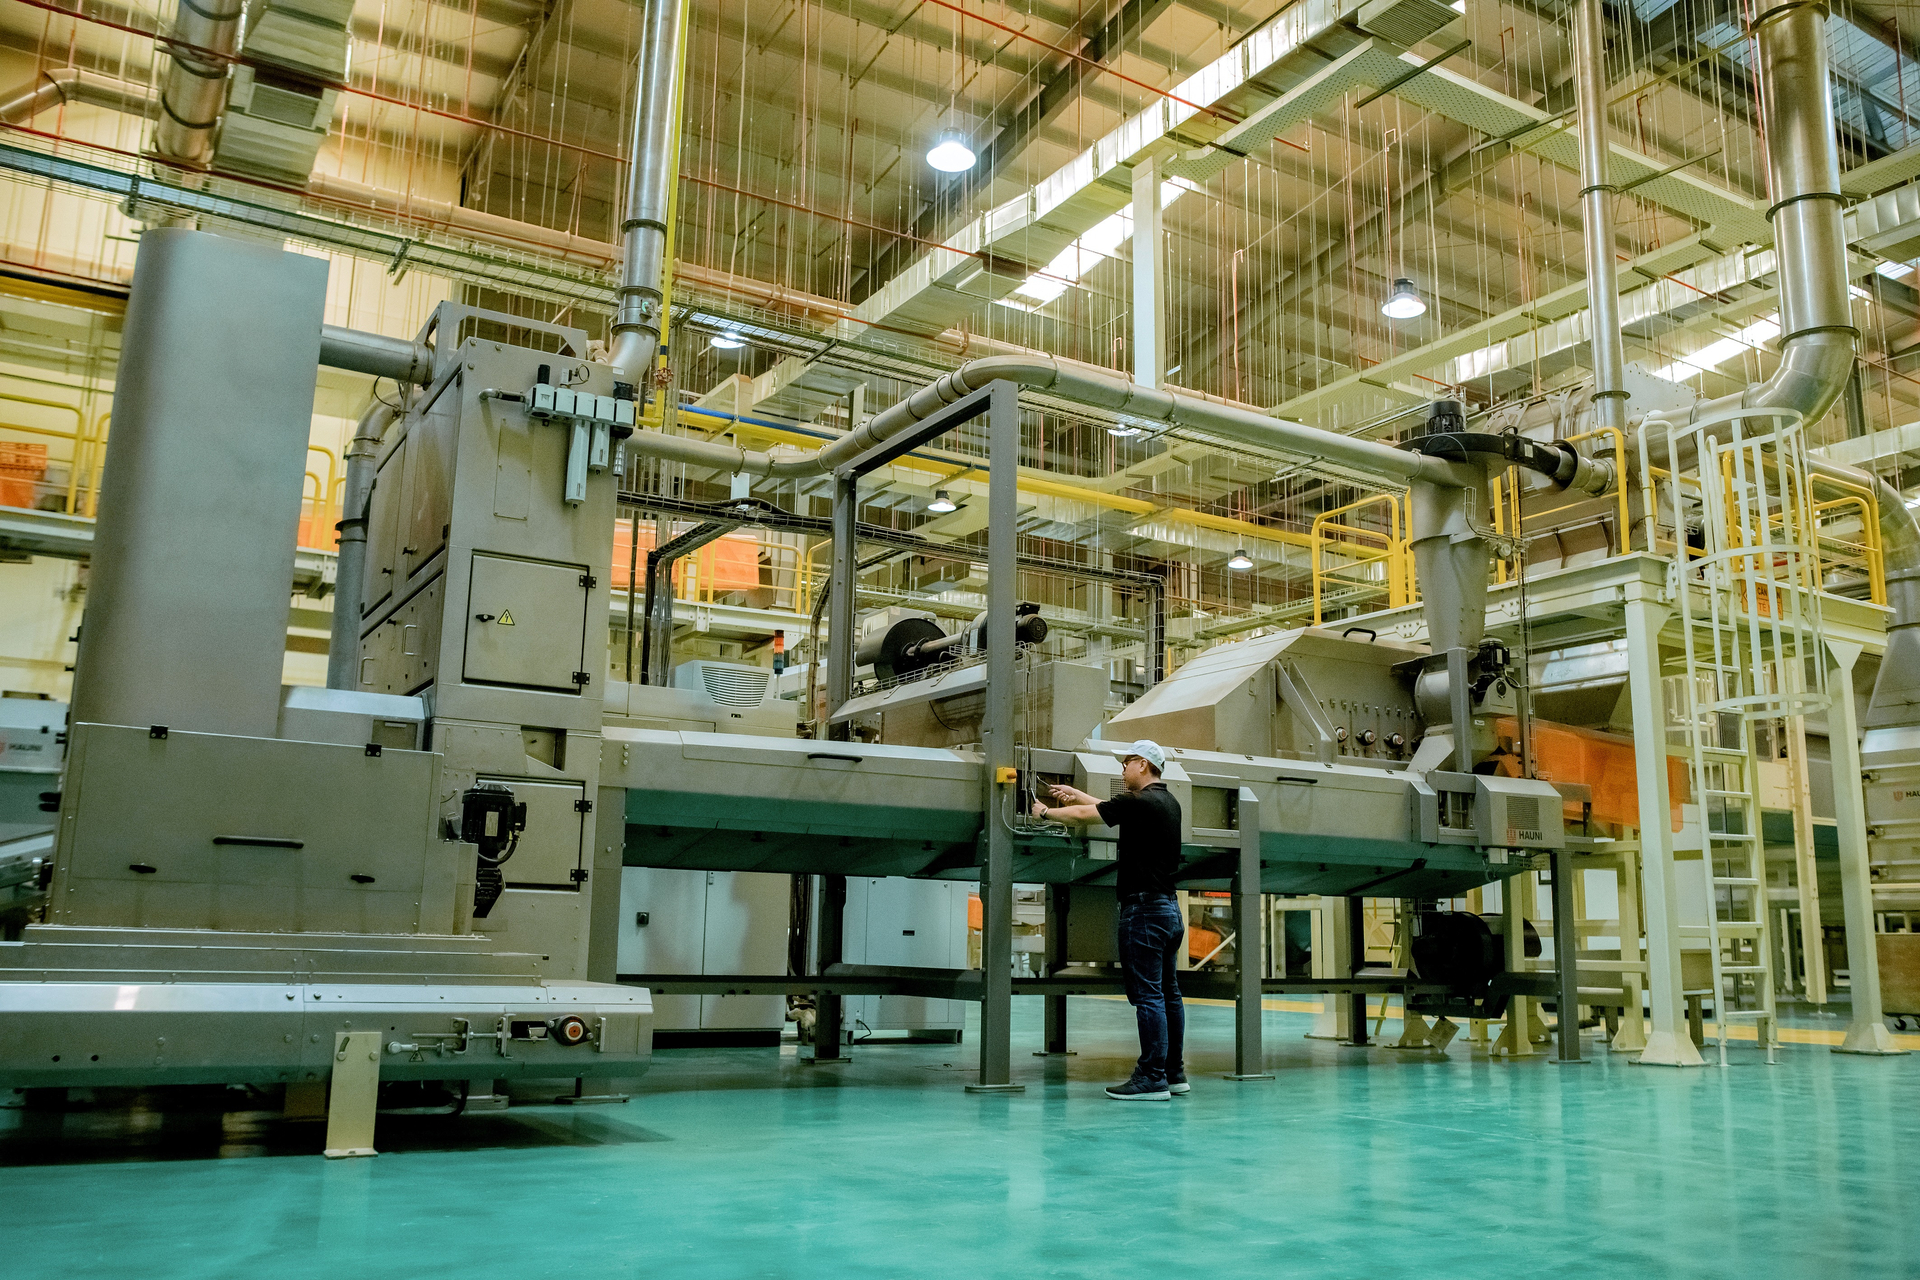 Dây chuyền sản xuất sợi thuốc lá được đầu tư tại Nhà máy mới ở Trảng É. Ảnh: KTC.